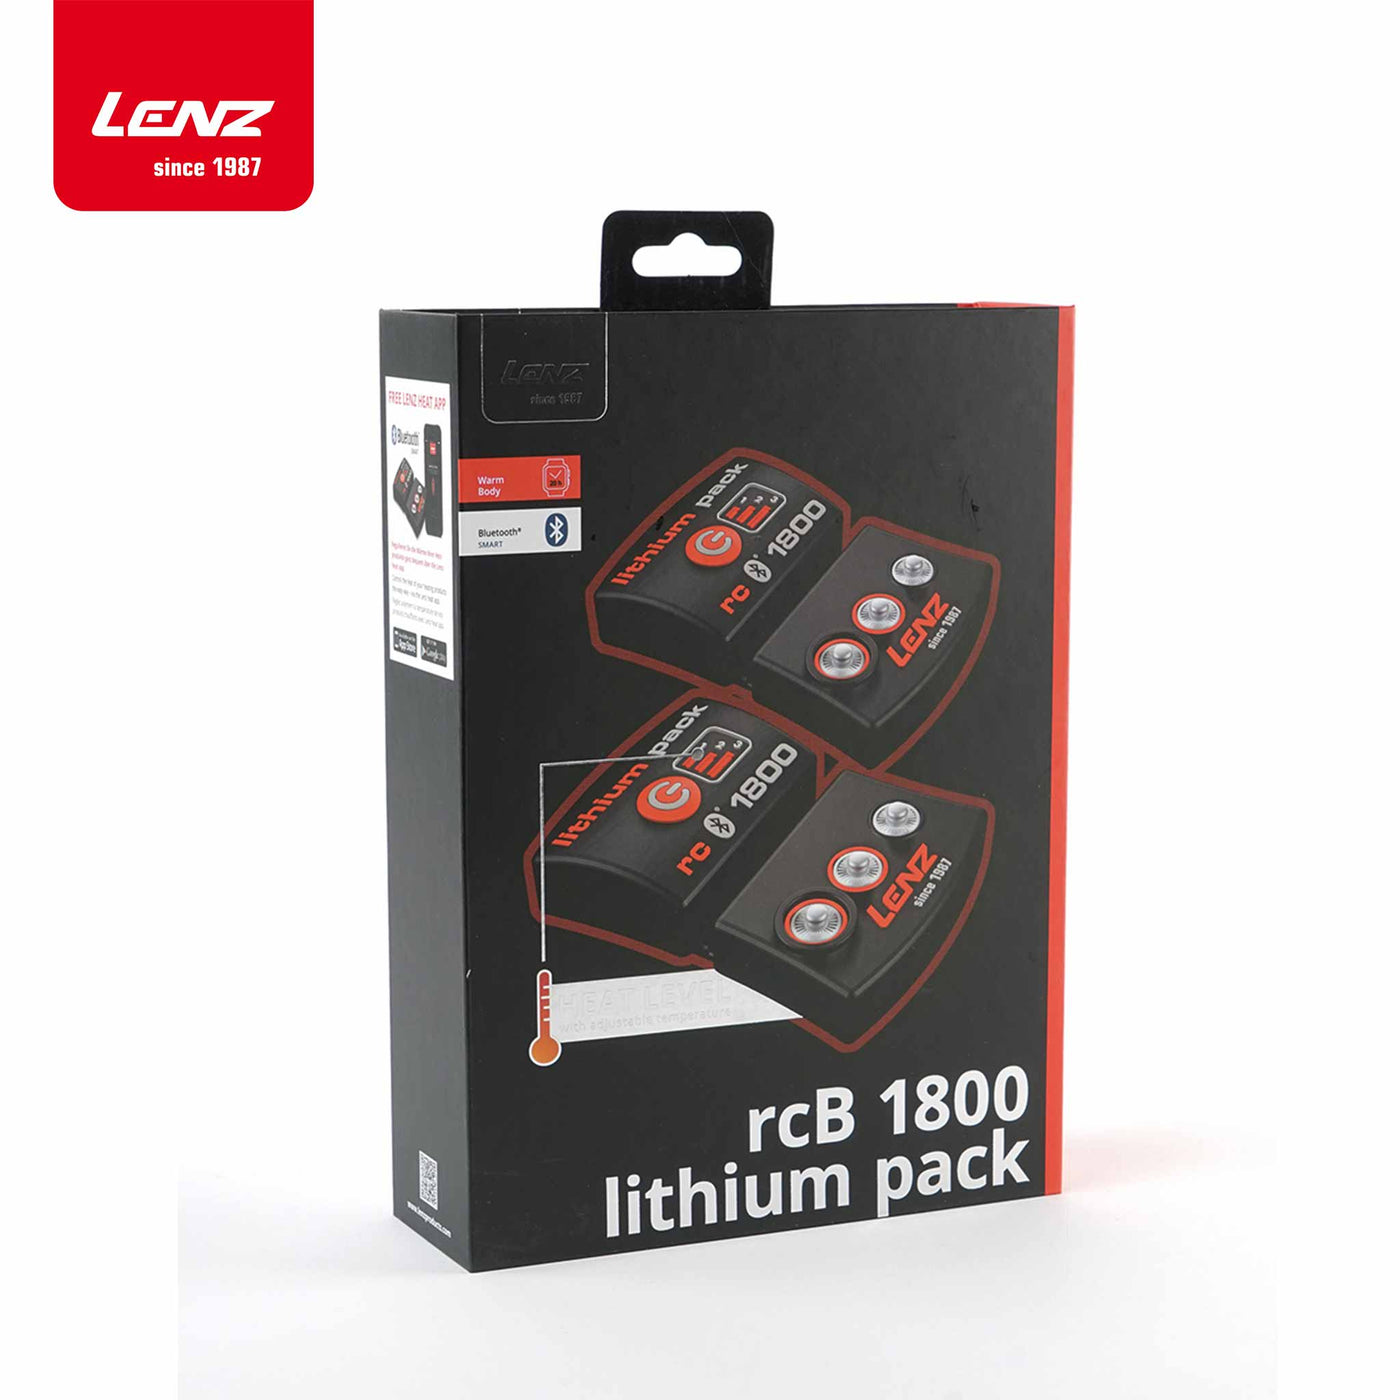 de retour : Lenz Lithium Pack rcB 1800 avec Bluetooth